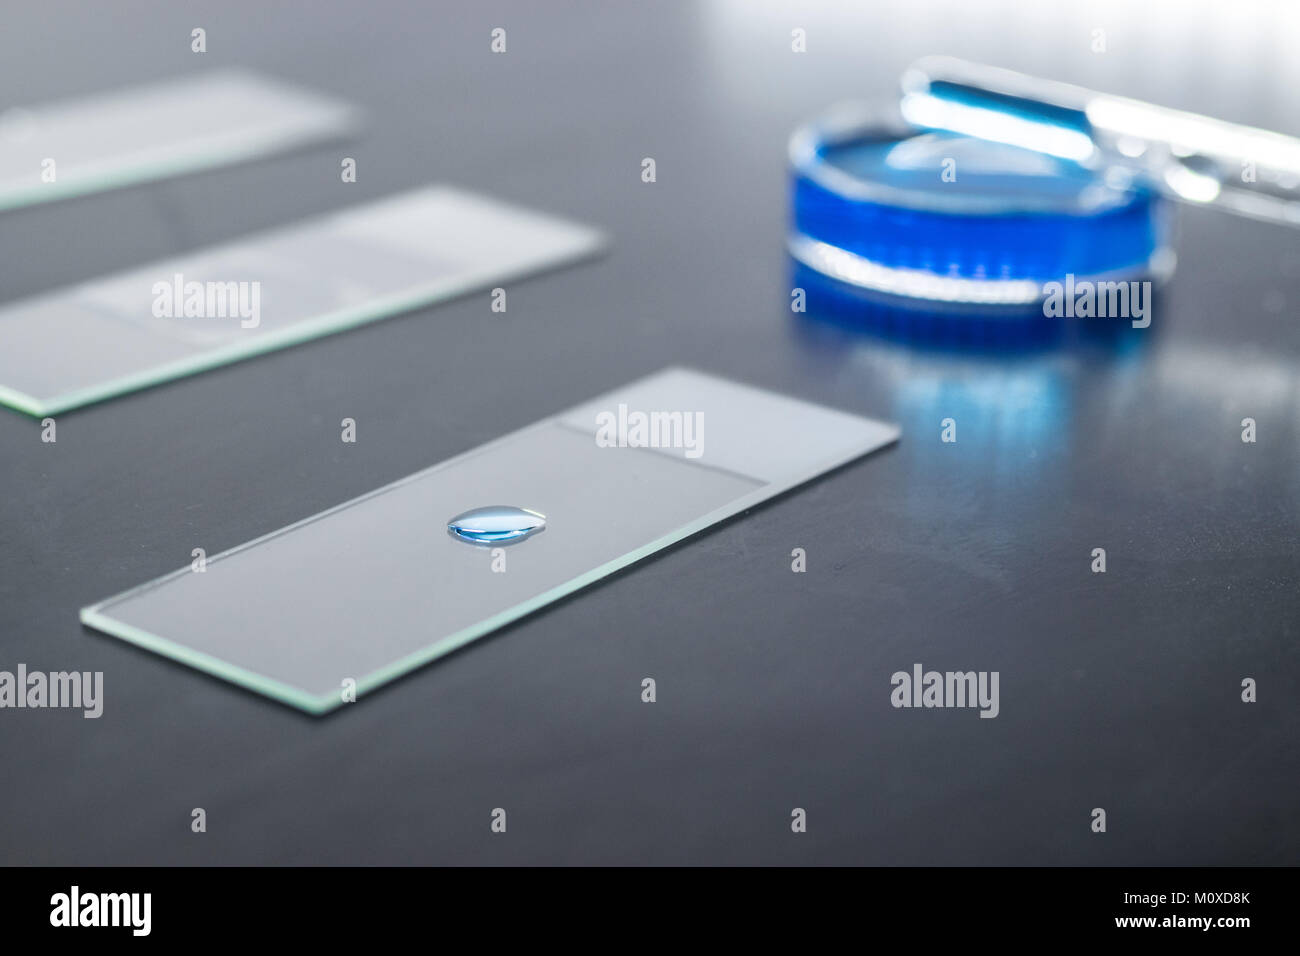 Microscopio portaobjetos de vidrio con una pequeña gota de sustancia liqudi azul, placa de Petri y pipeta gotero en el fondo Foto de stock